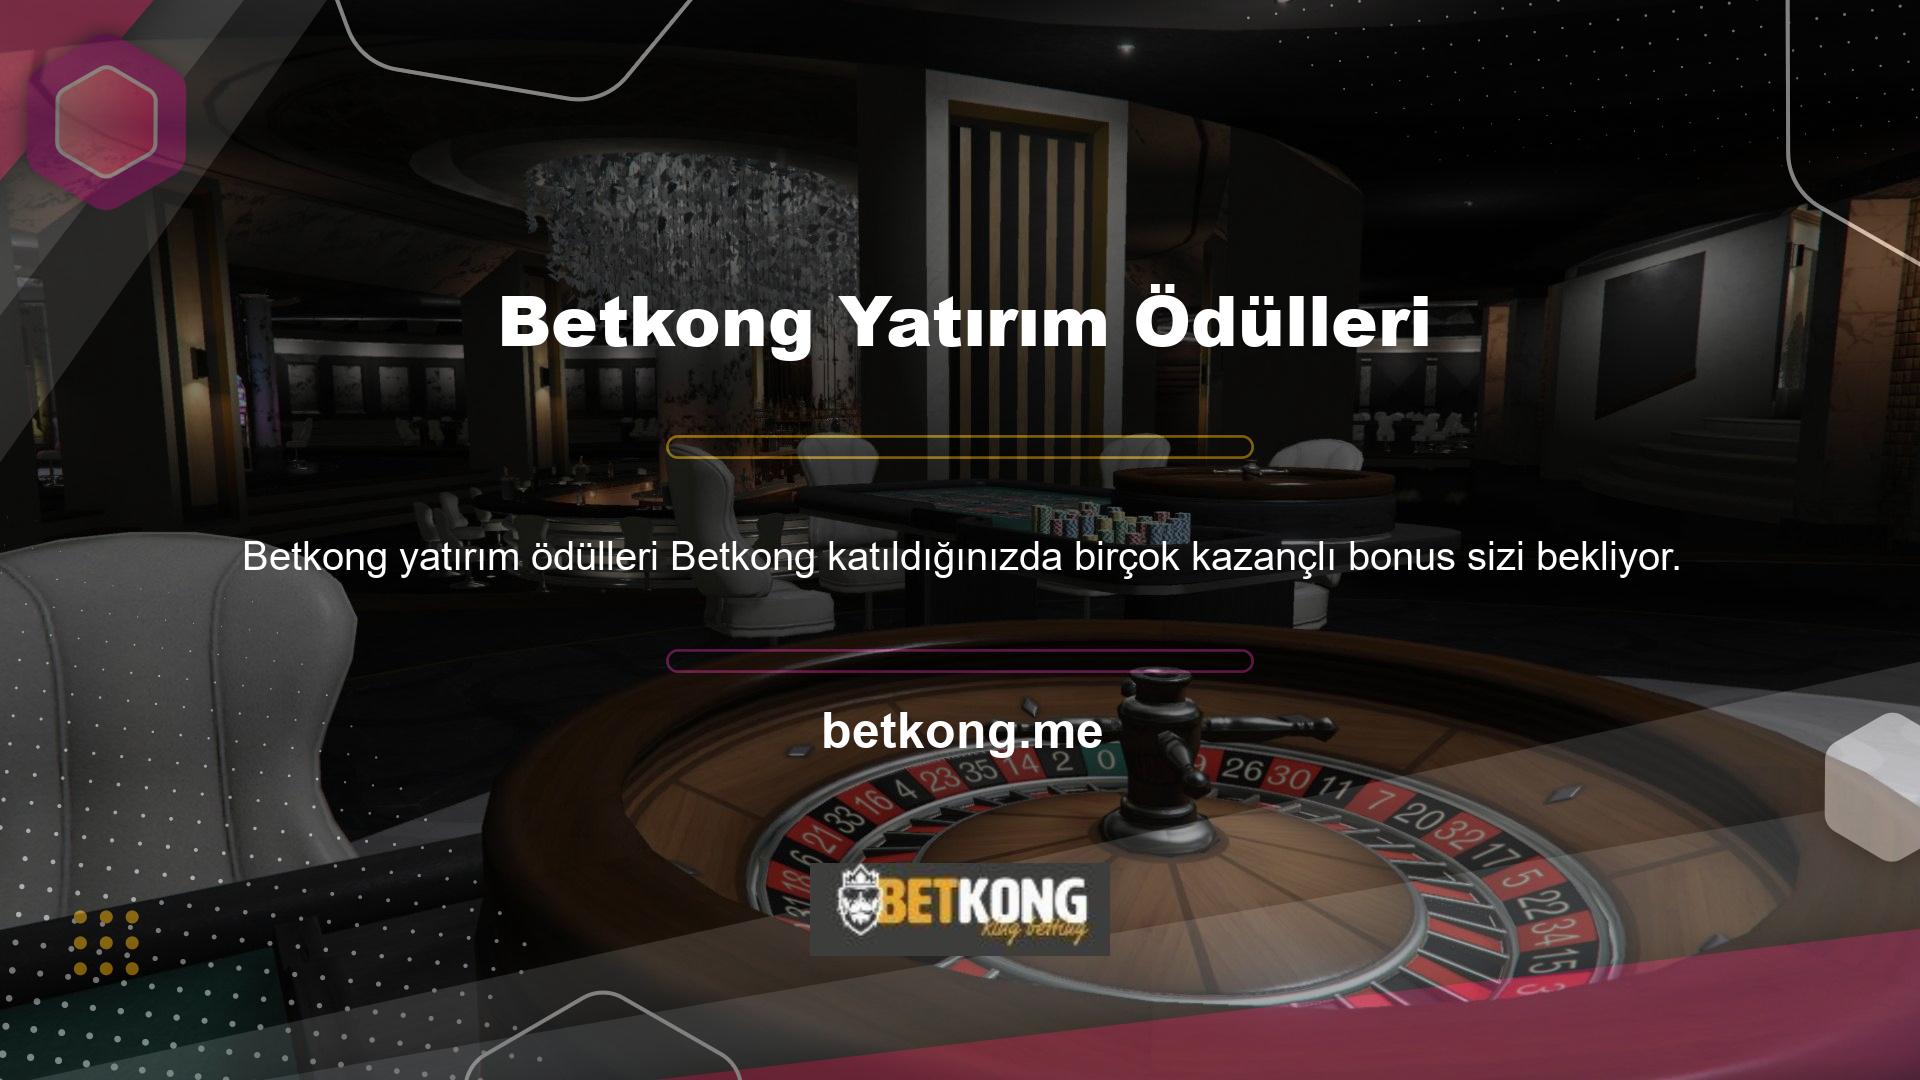 Türkiye'nin en cömert bahis şirketlerinden biri olan Betkong, en karlı bonusları ve etkinlikleri sunuyor